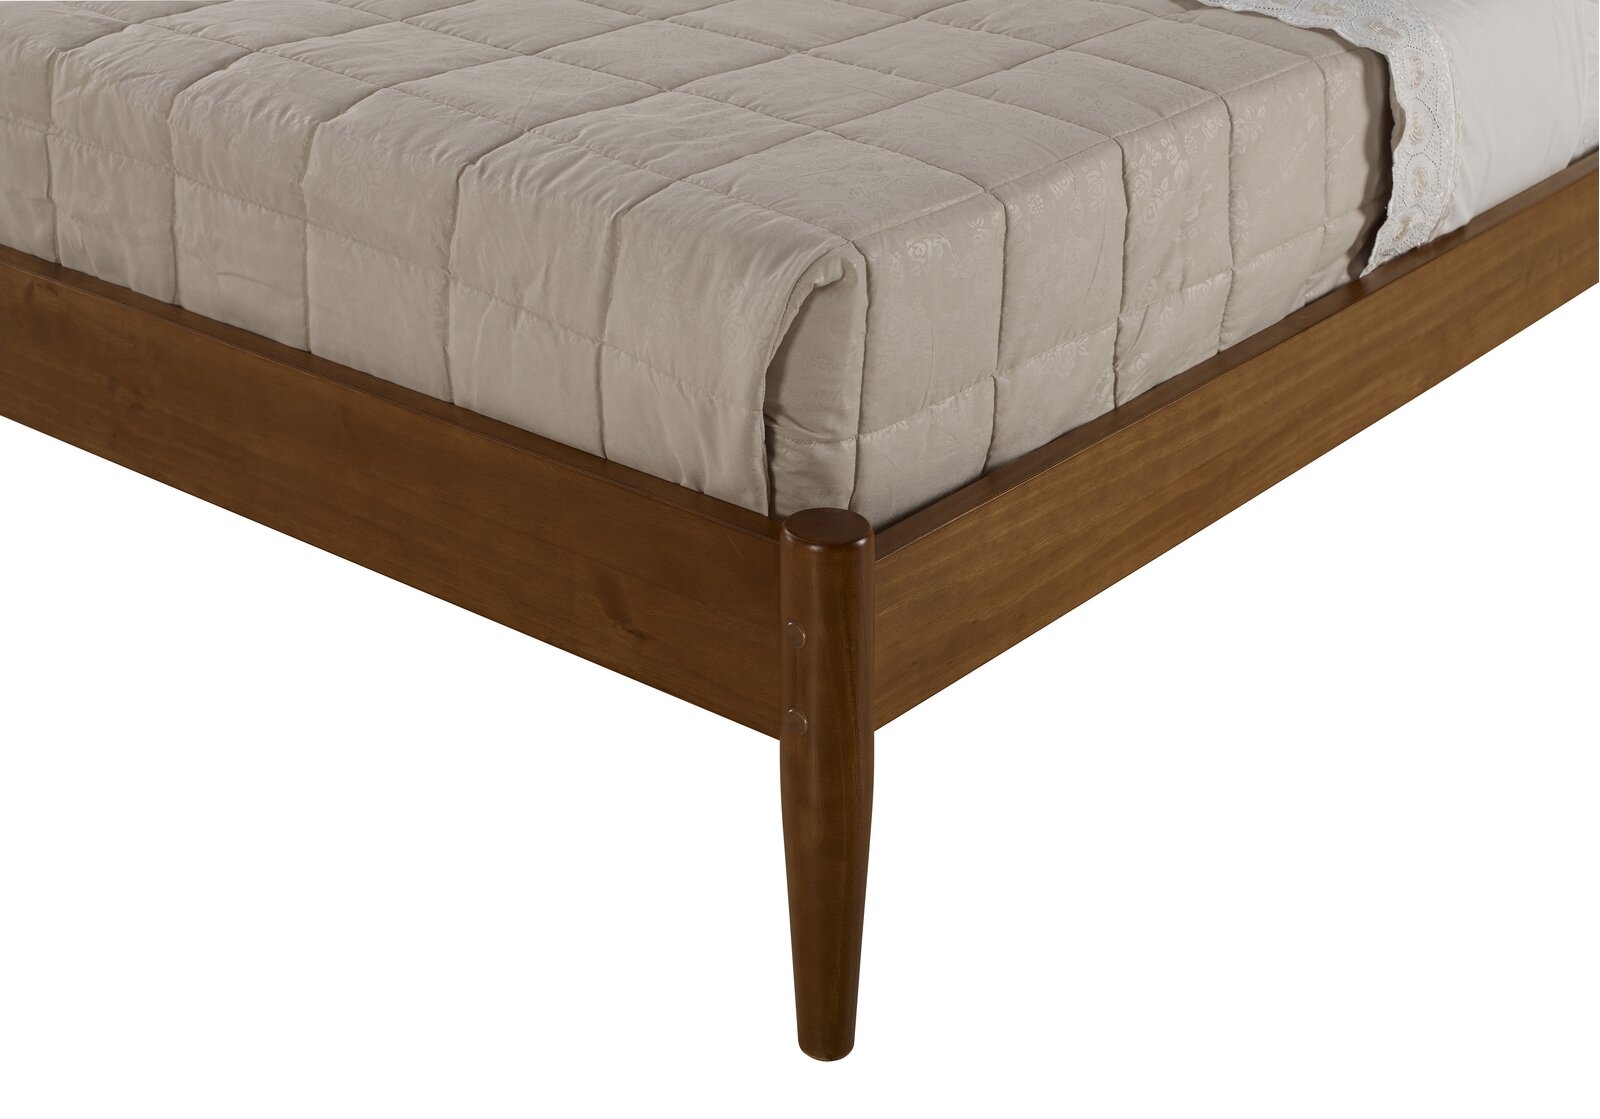 Grady King Solid Wood Platform Bed - Image 2